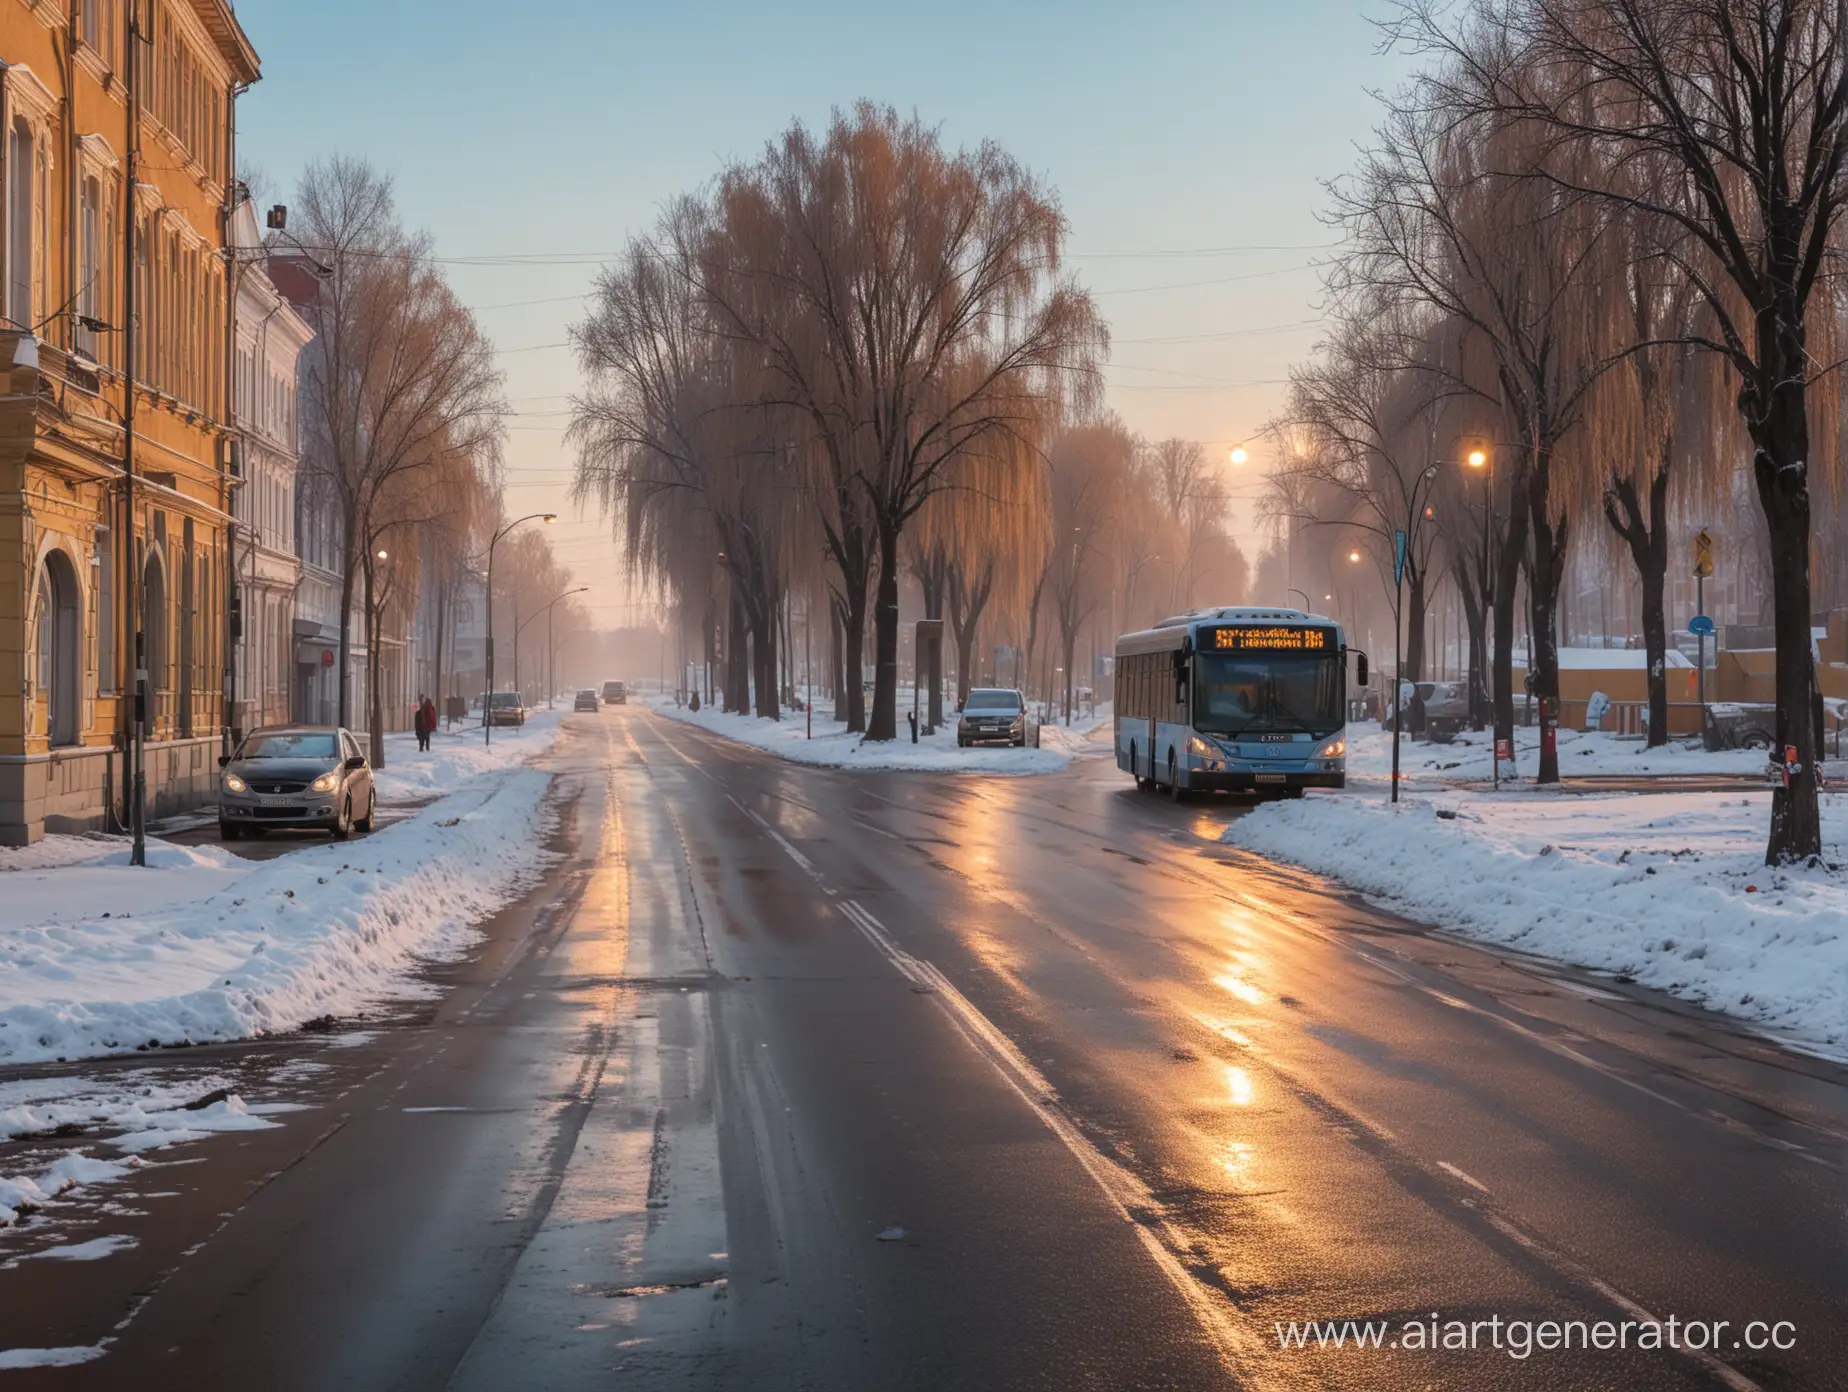 Улица российского города, ранее зимнее утро, к остановке подъезжает автобус.